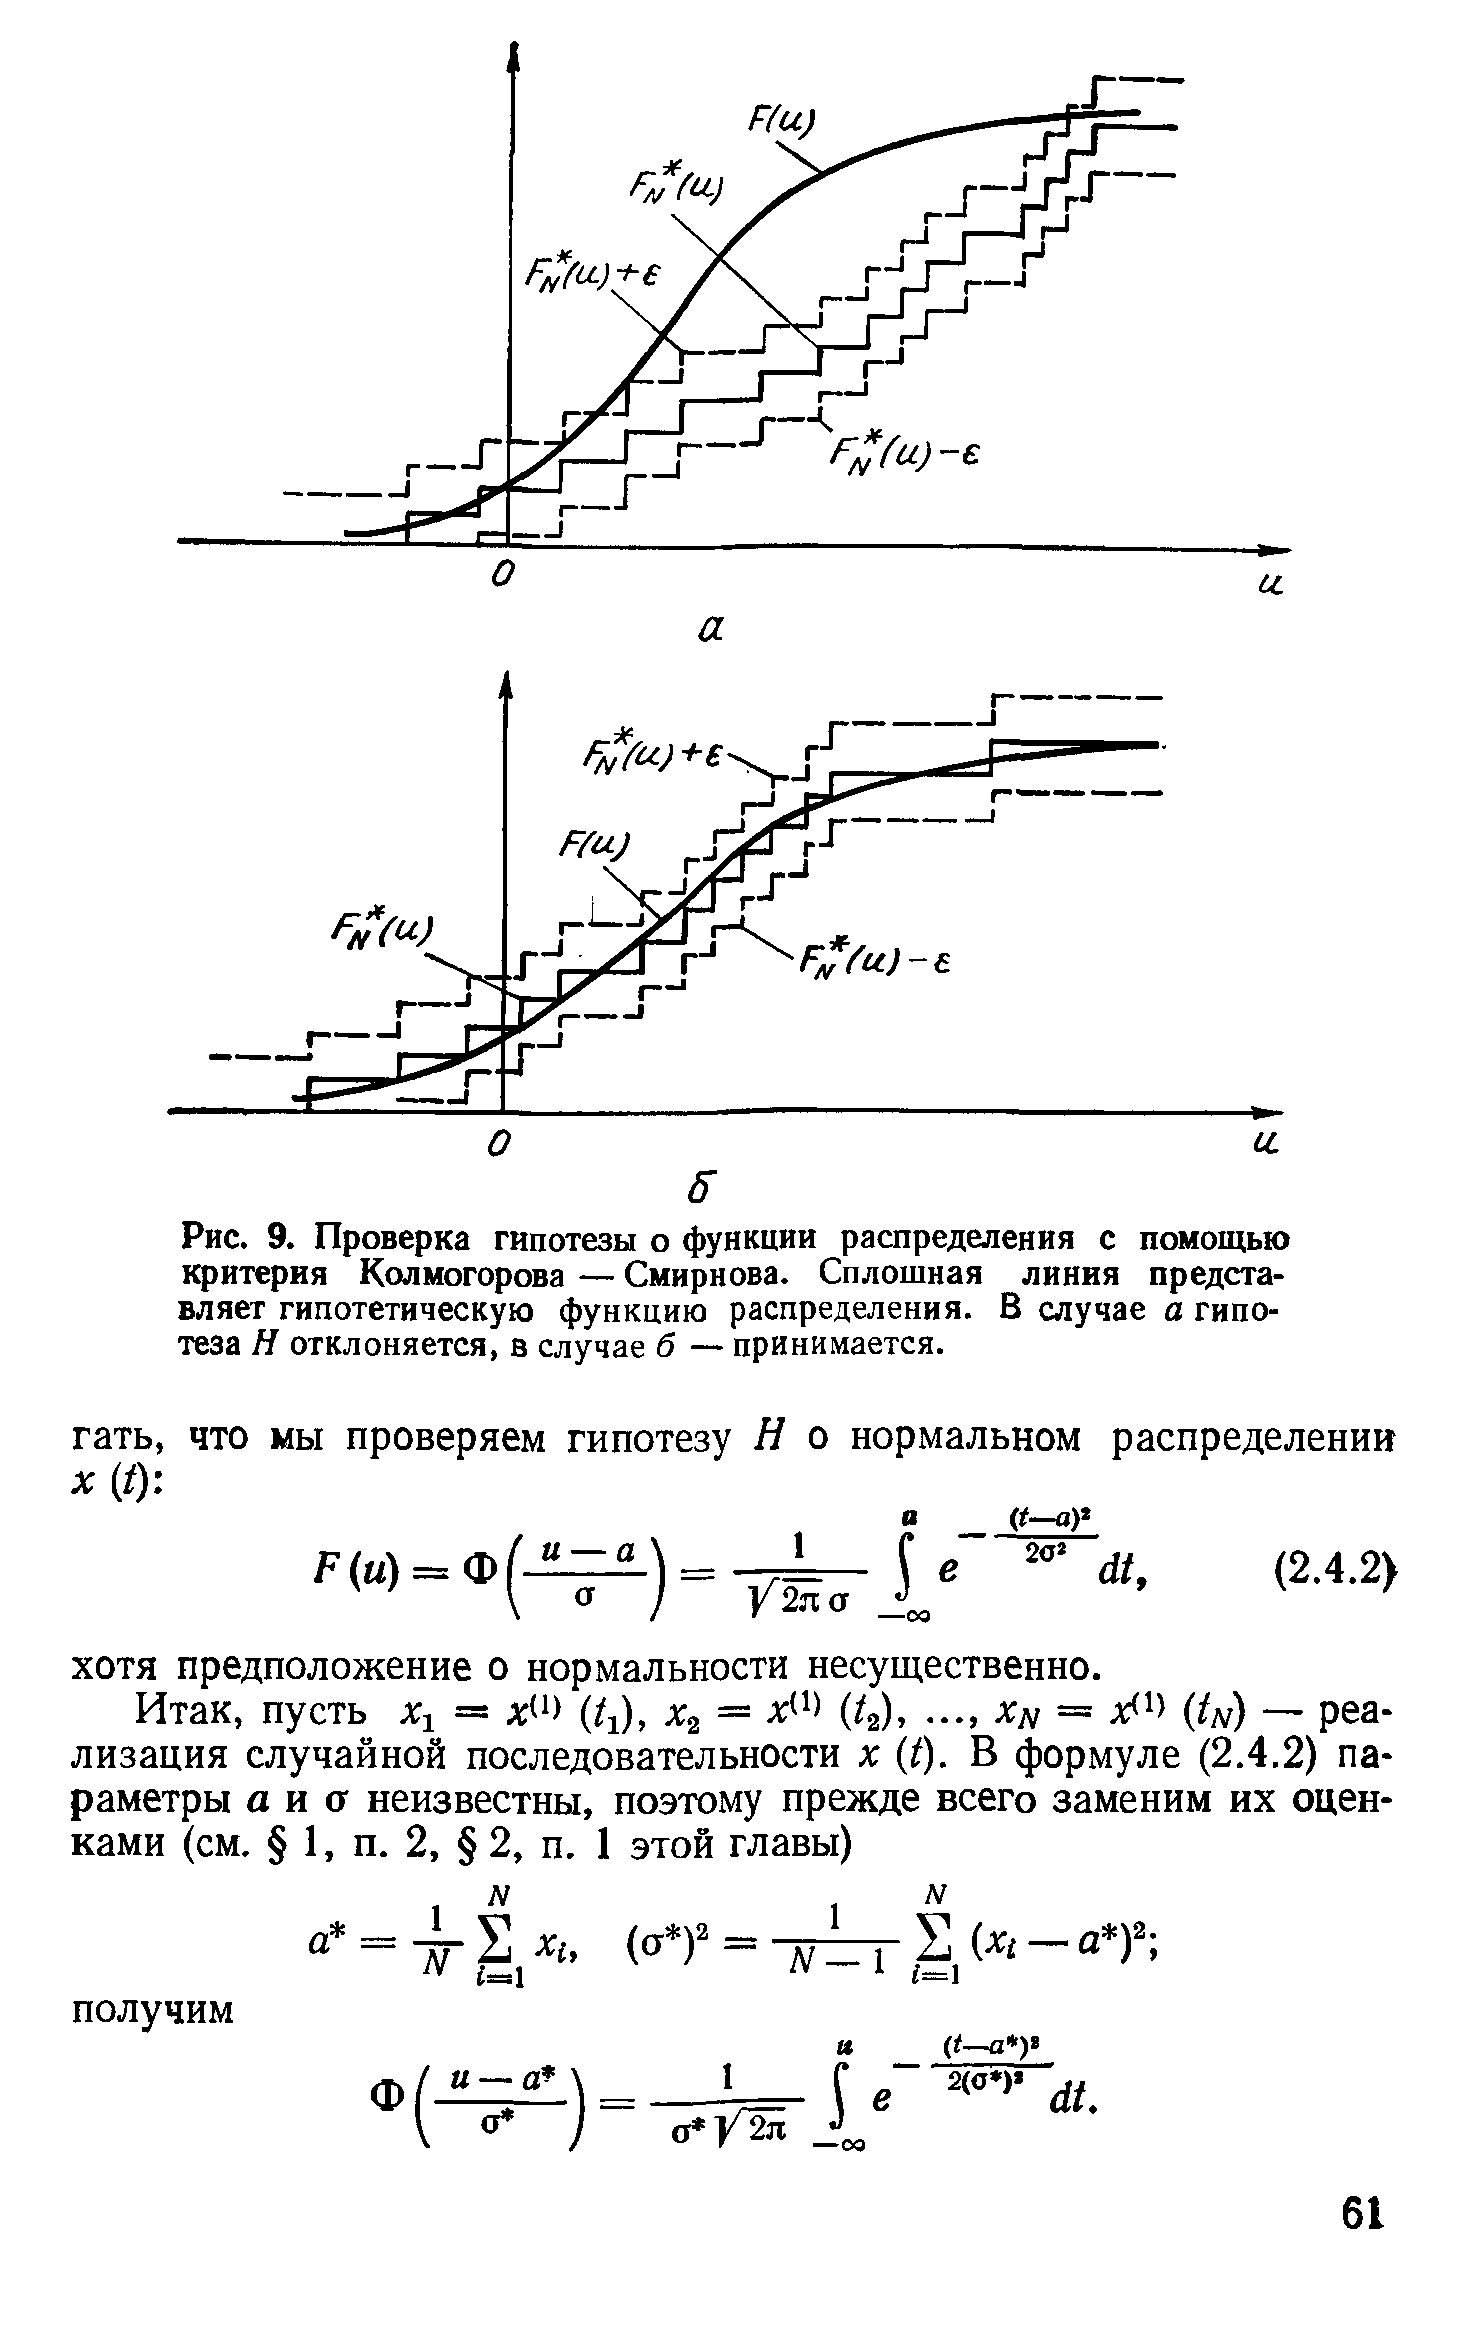 Рис. 9. Проверка гипотезы о функции распределения с помощью критерия Колмогорова — Смирнова. Сплошная линия представляет гипотетическую функцию распределения. В случае а гипотеза Н отклоняется, в случае б — принимается.